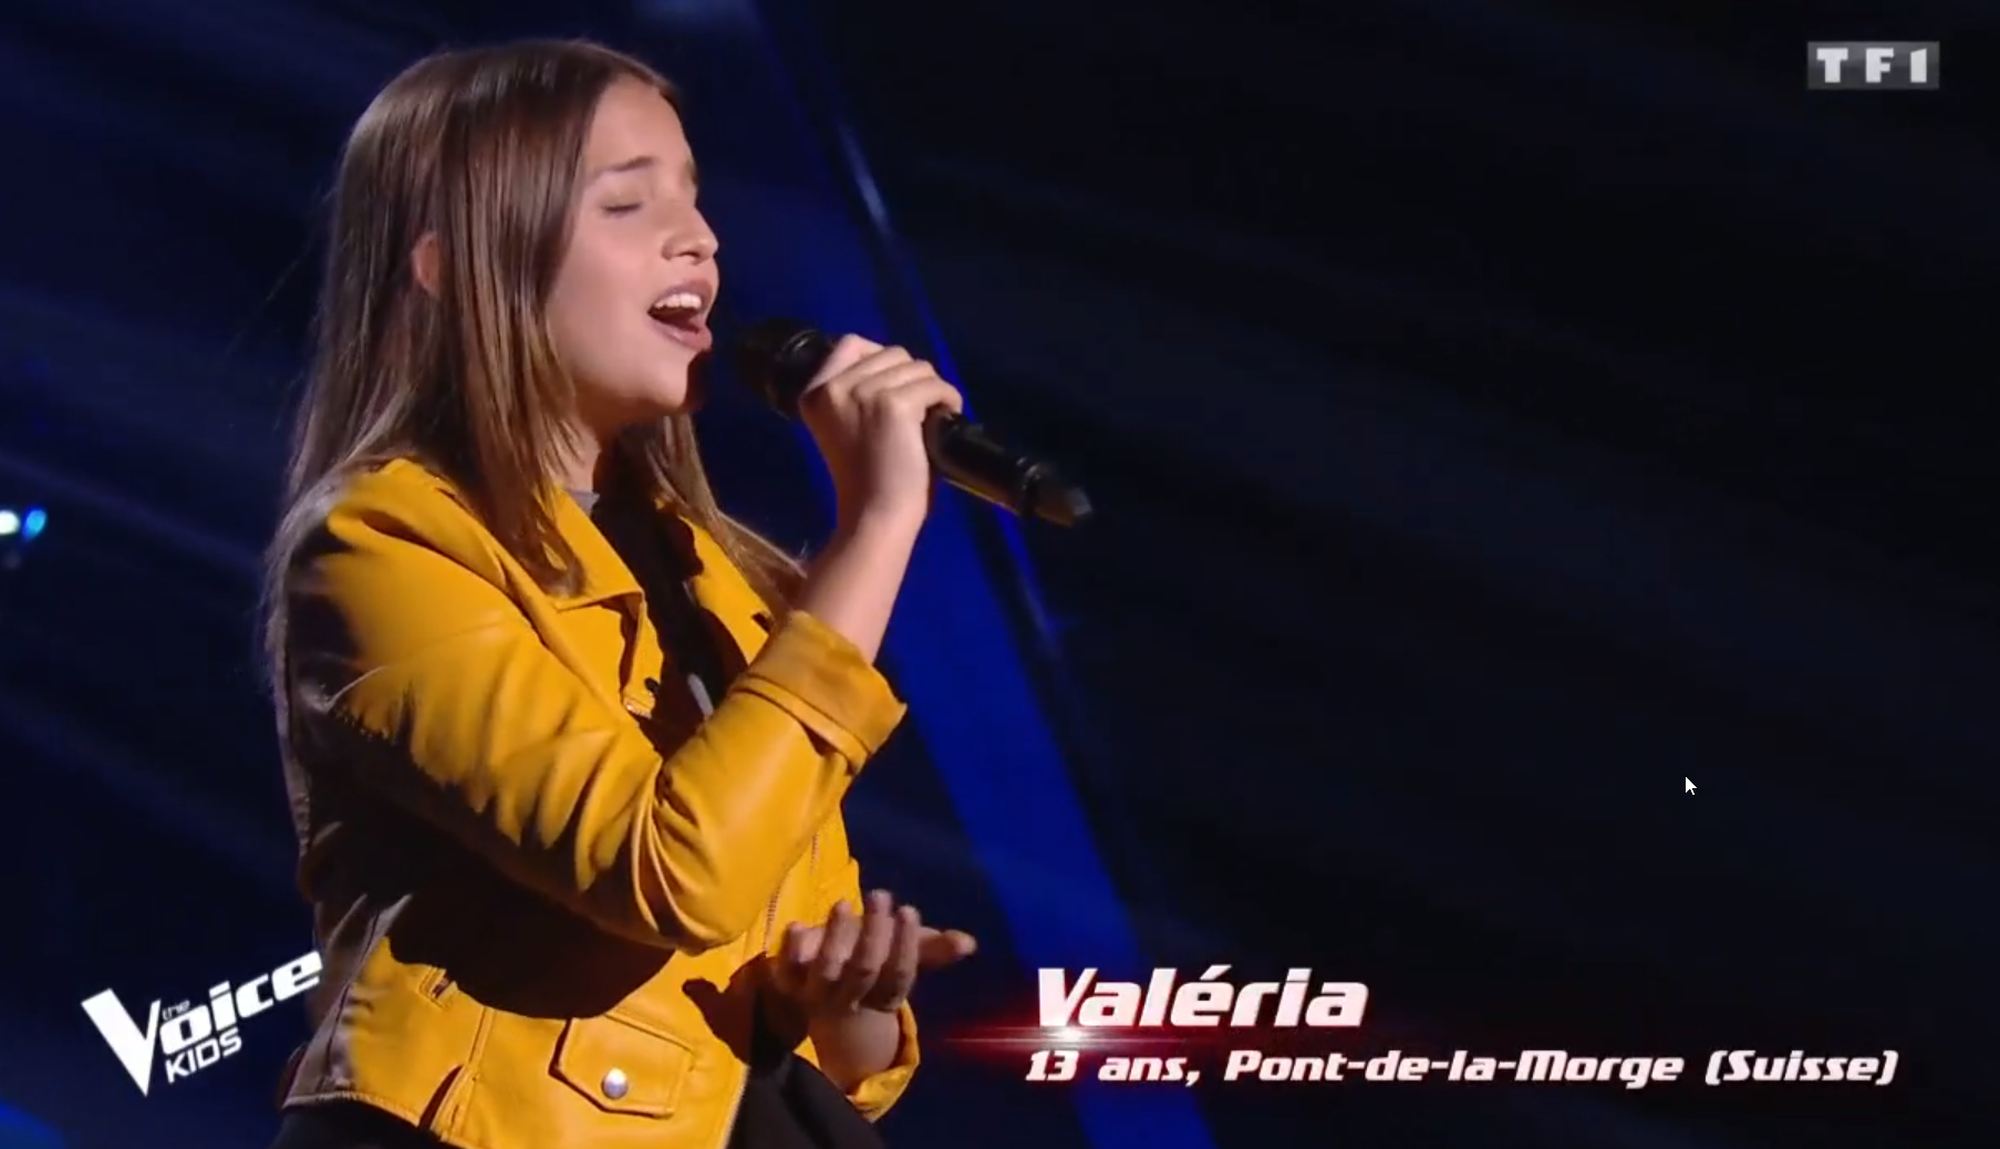 La jeune Valaisanne a séduit TF1 avec une voix mature et étincelante.